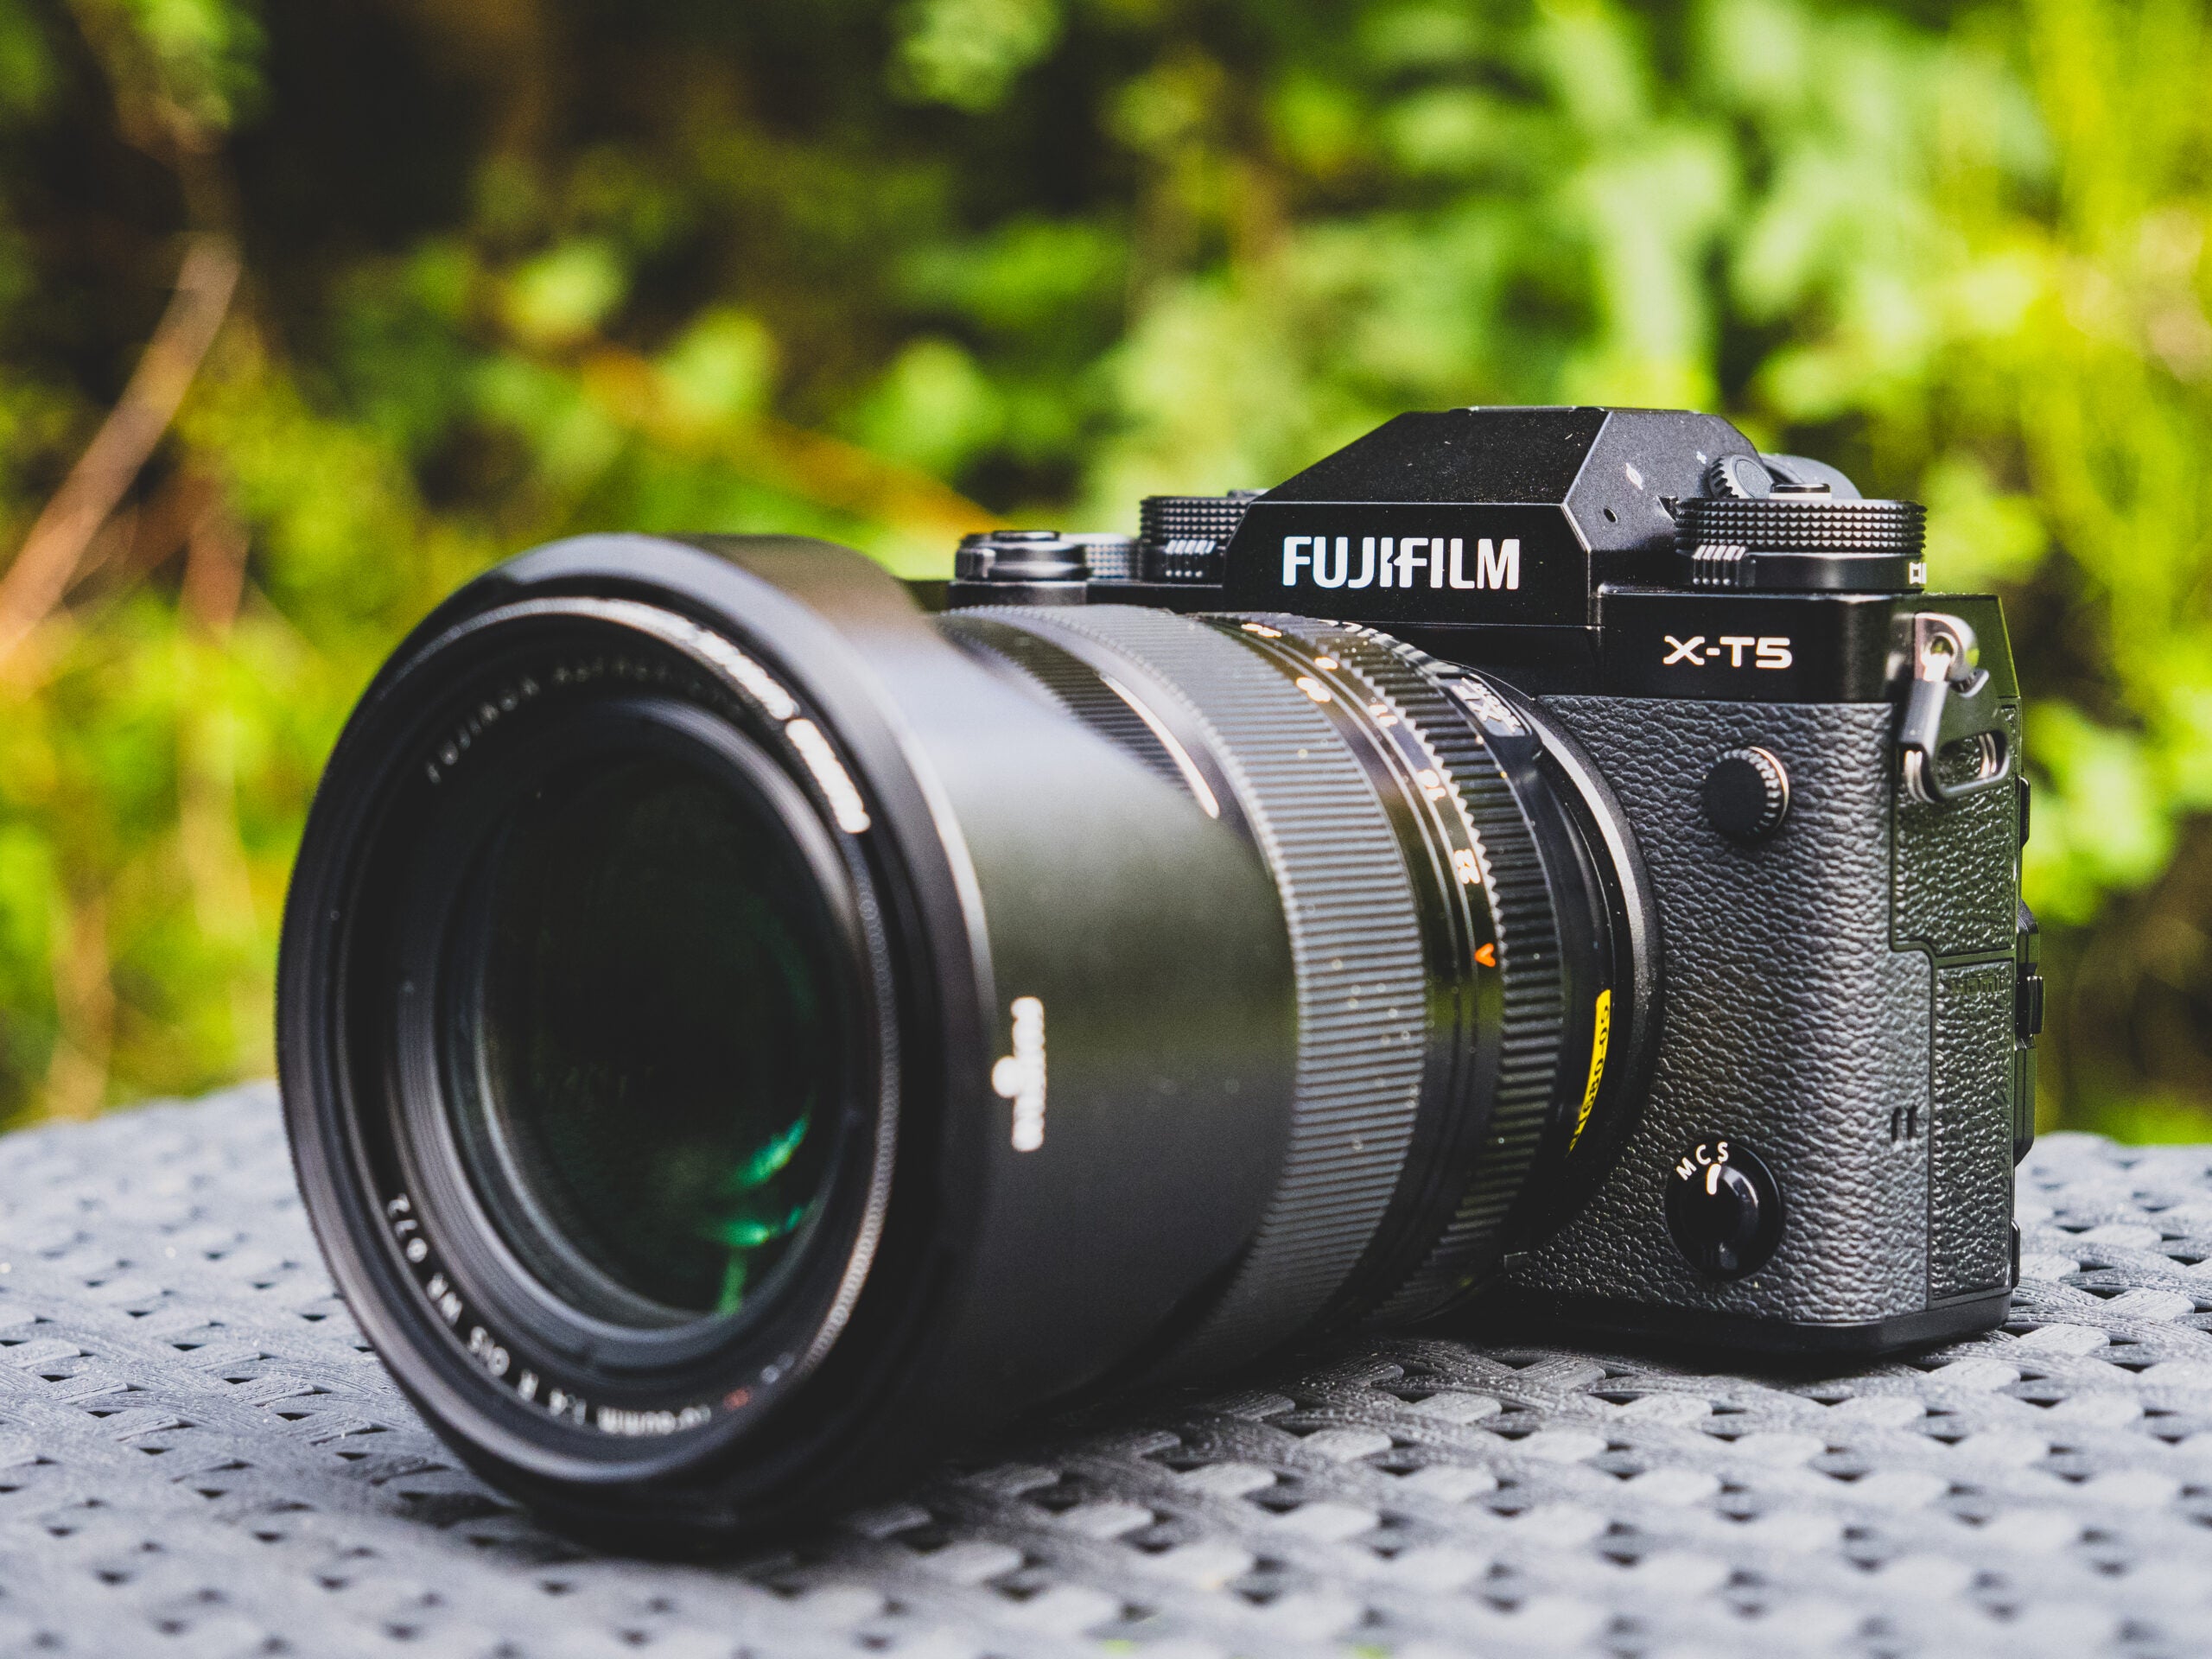 How to Use a Fujifilm Digital Camera?